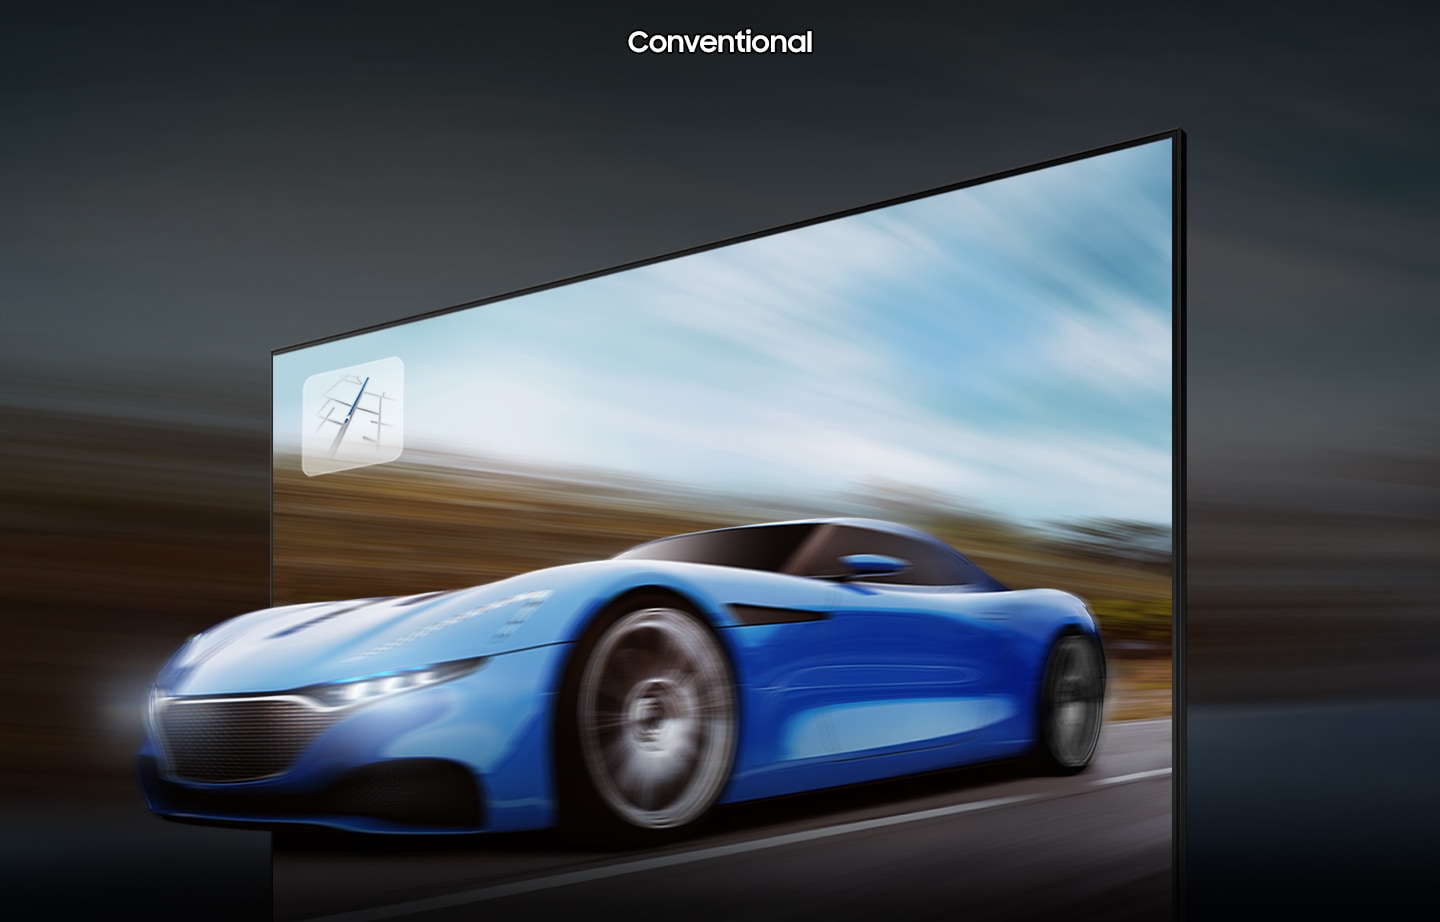 Un'auto da corsa nella TV convenzionale sembra sfocata e meno chiara rispetto alla TV QLED con tecnologia motion xcelerator turbo+.